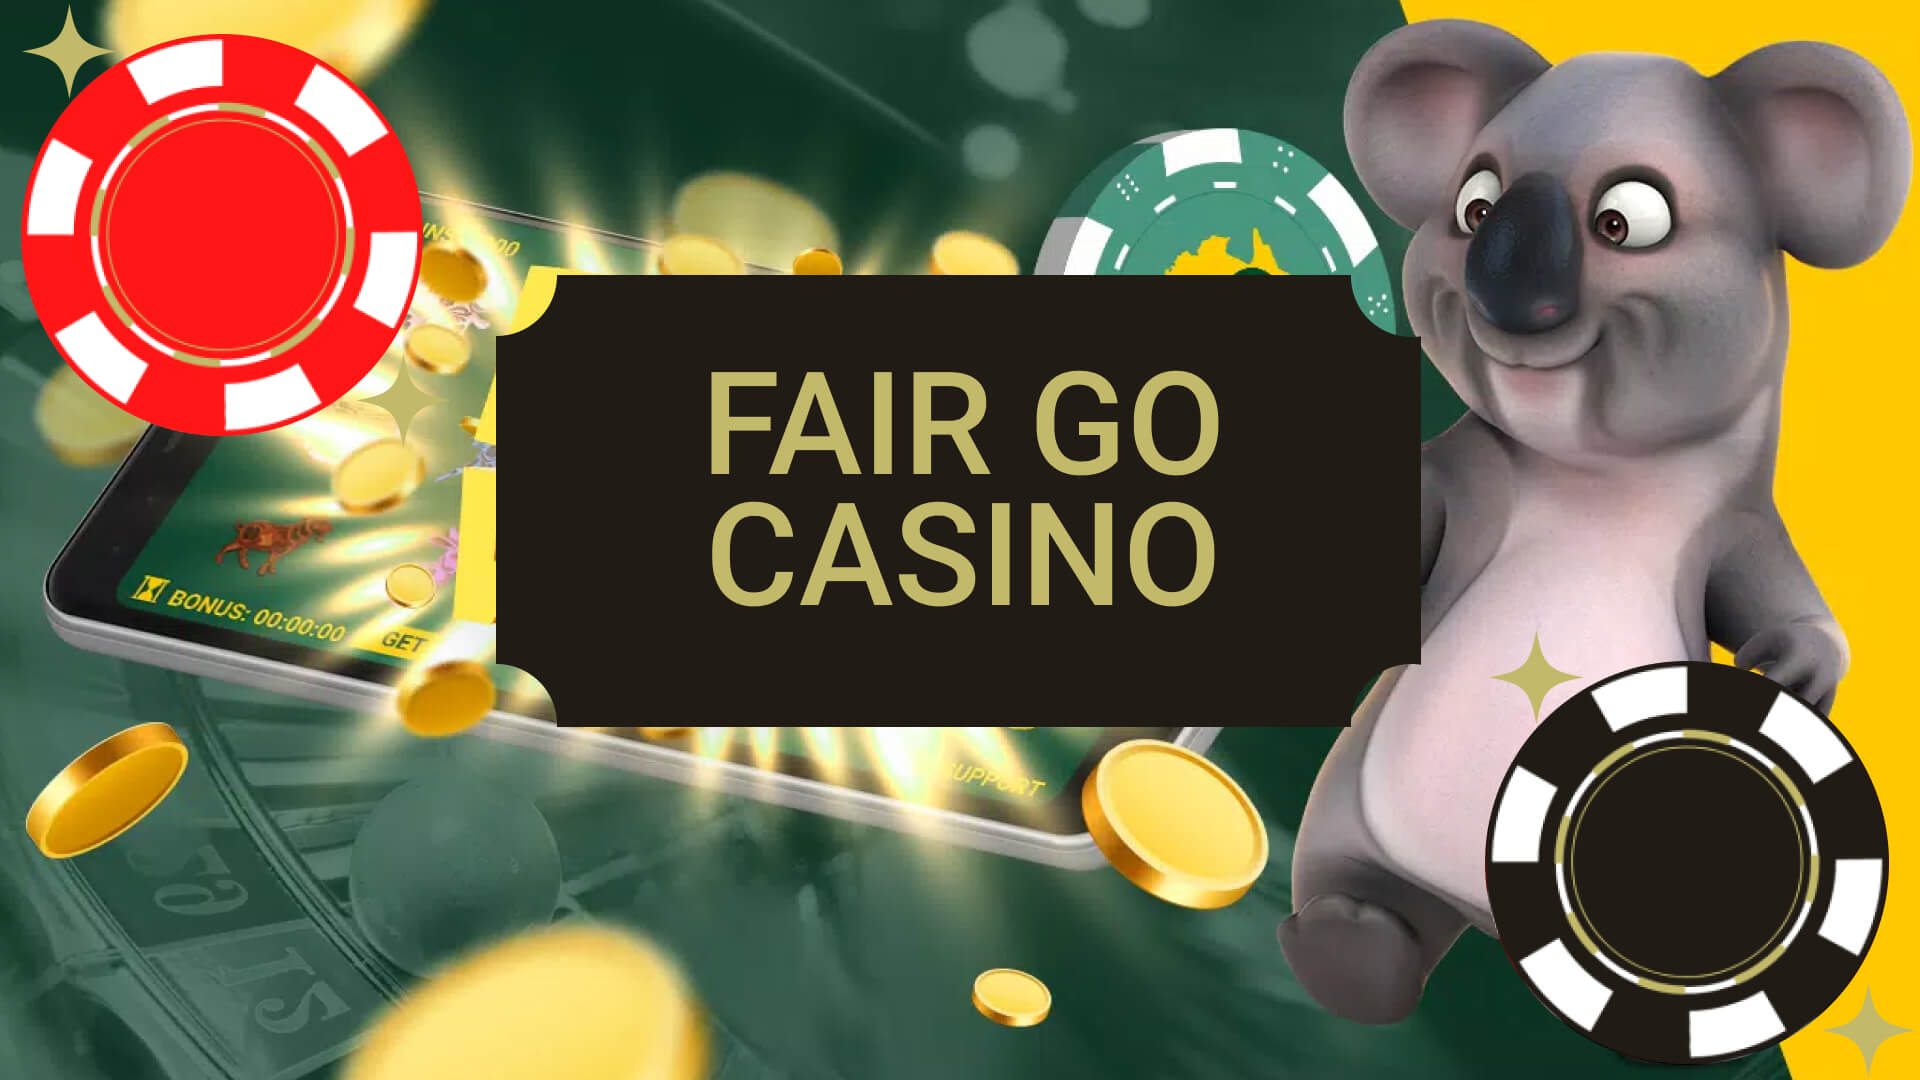 Fair GO Casino Review